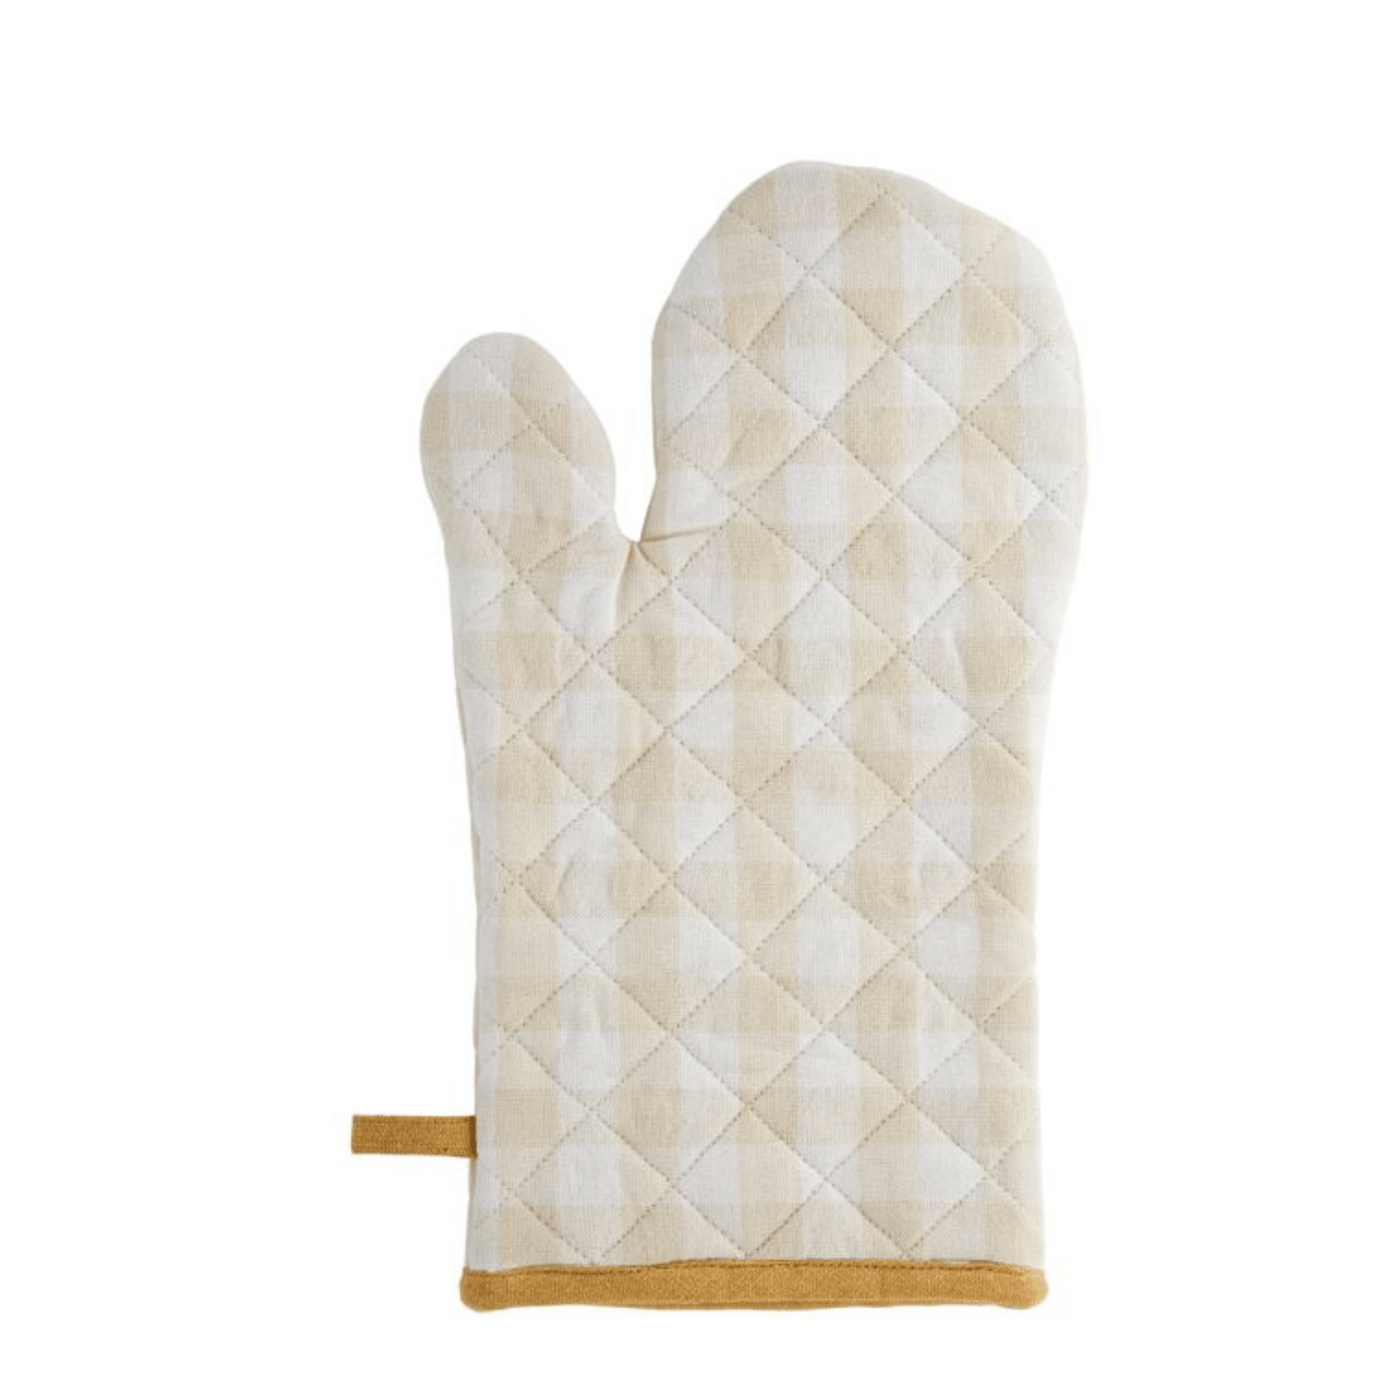 Germaine Oven Glove